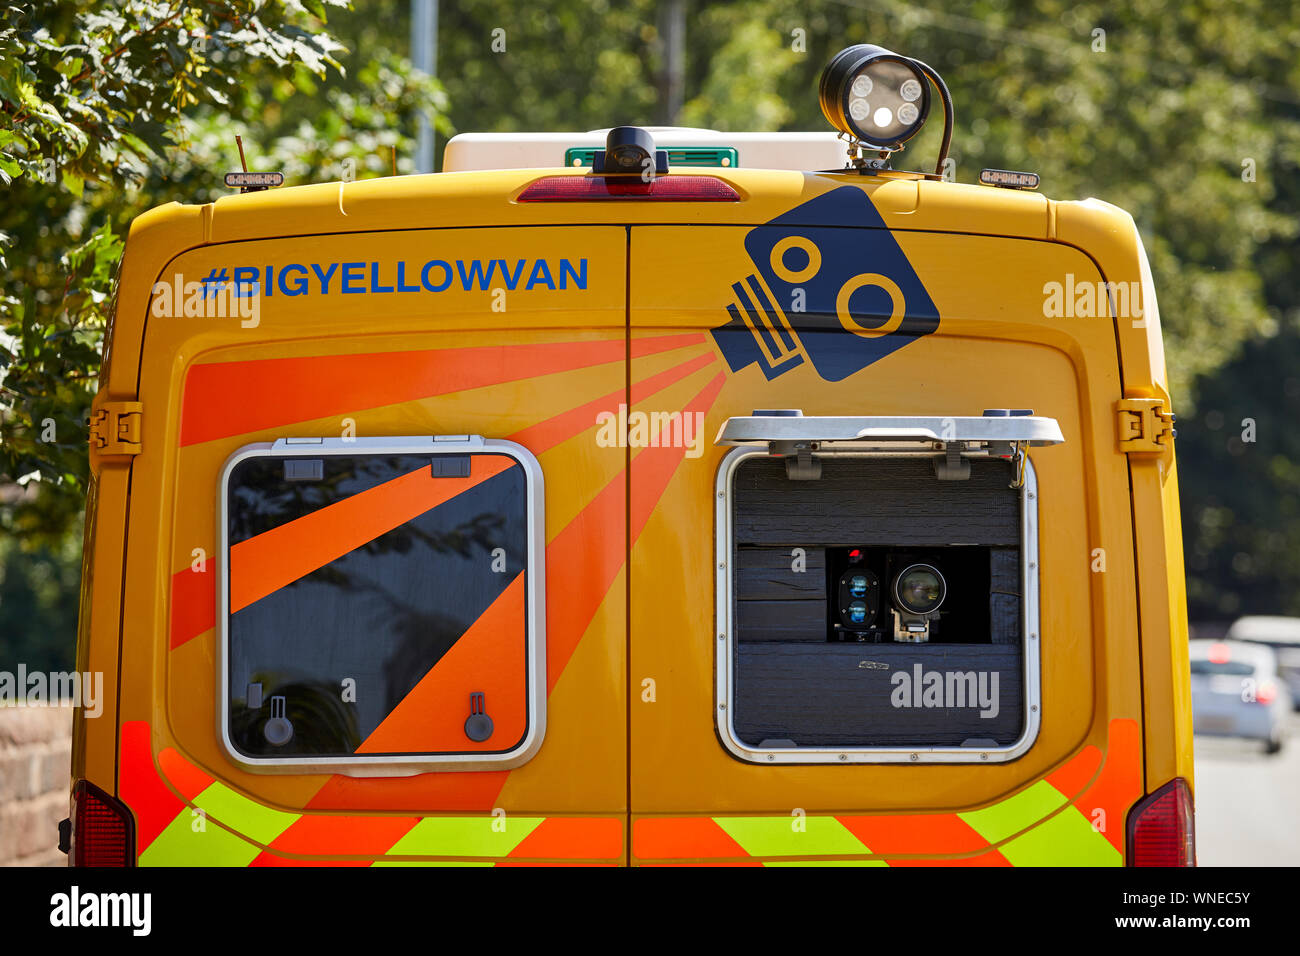 Cheshire Constabulary Sicherheit Kamera gelb Geschwindigkeit Durchsetzung kamera van in Warrington arbeiten Stockfoto